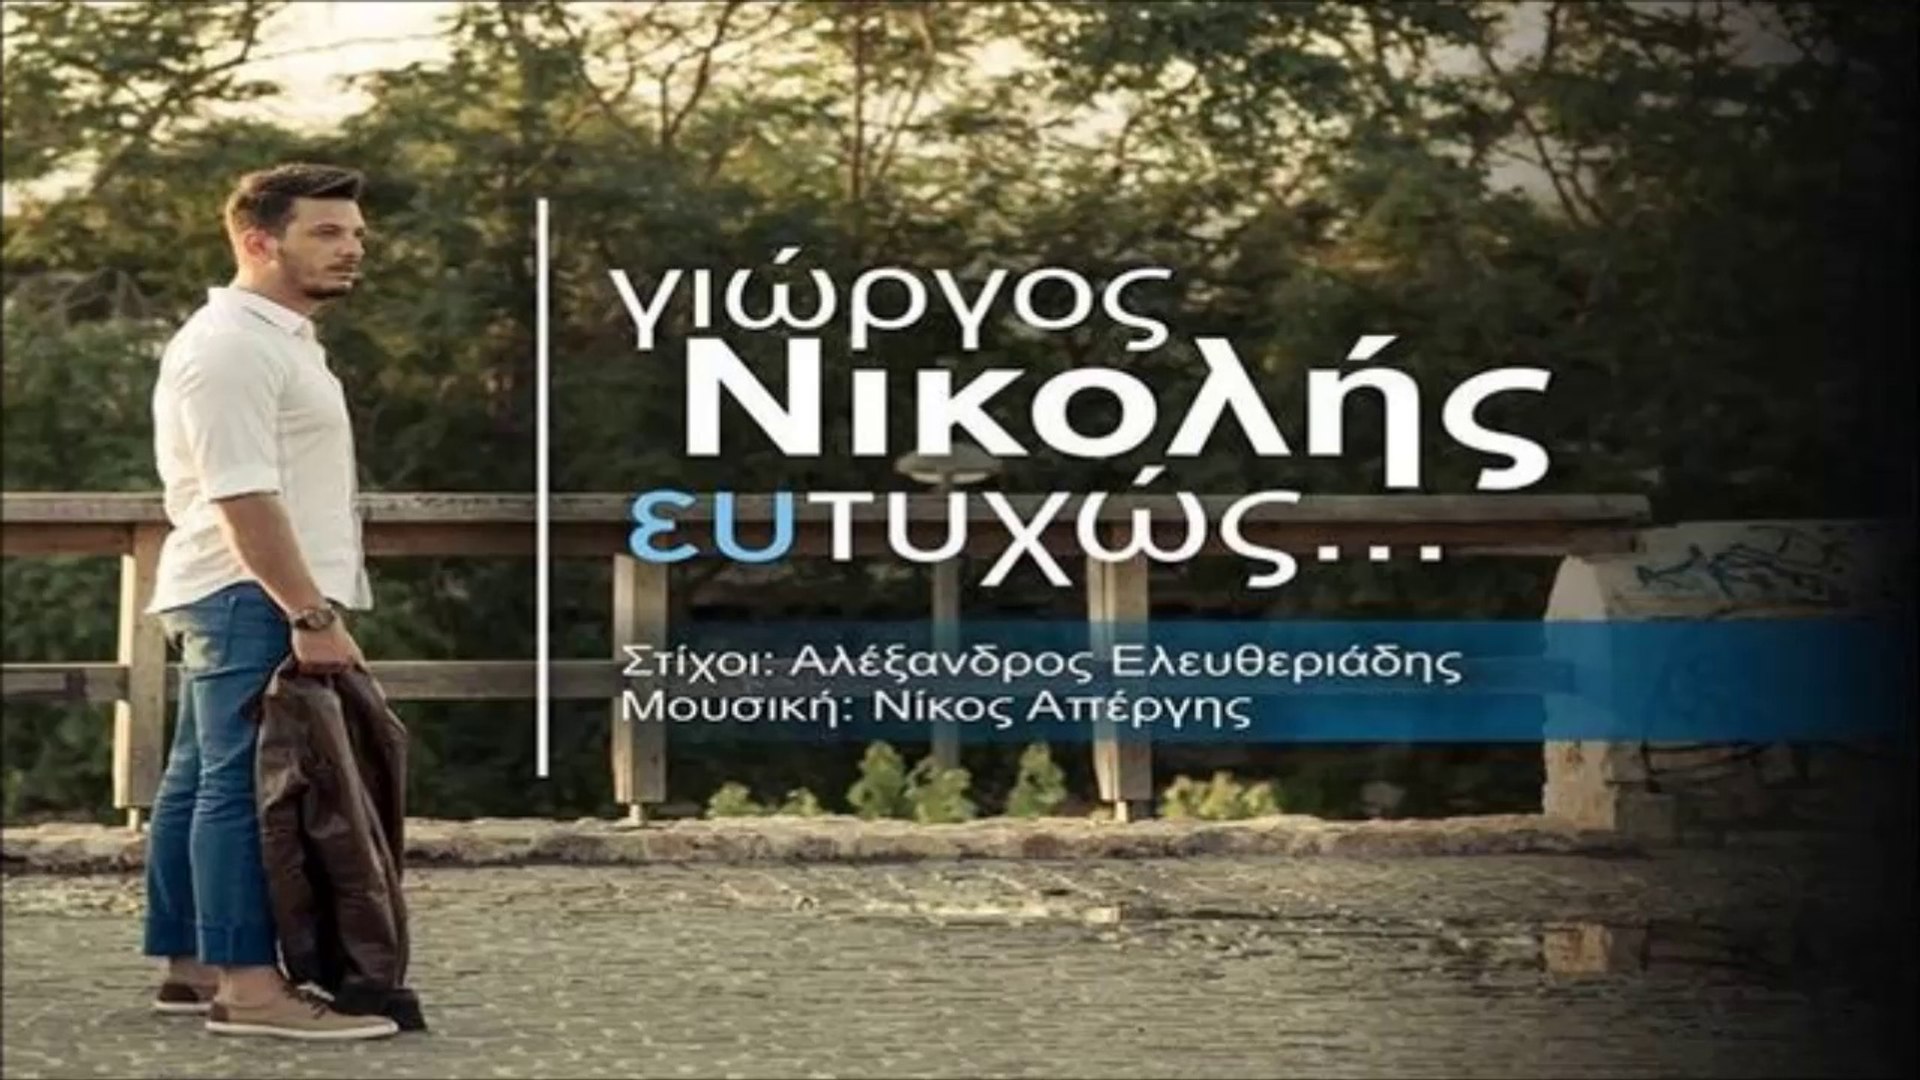 Γιώργος Νικολής - Ευτυχώς - video Dailymotion